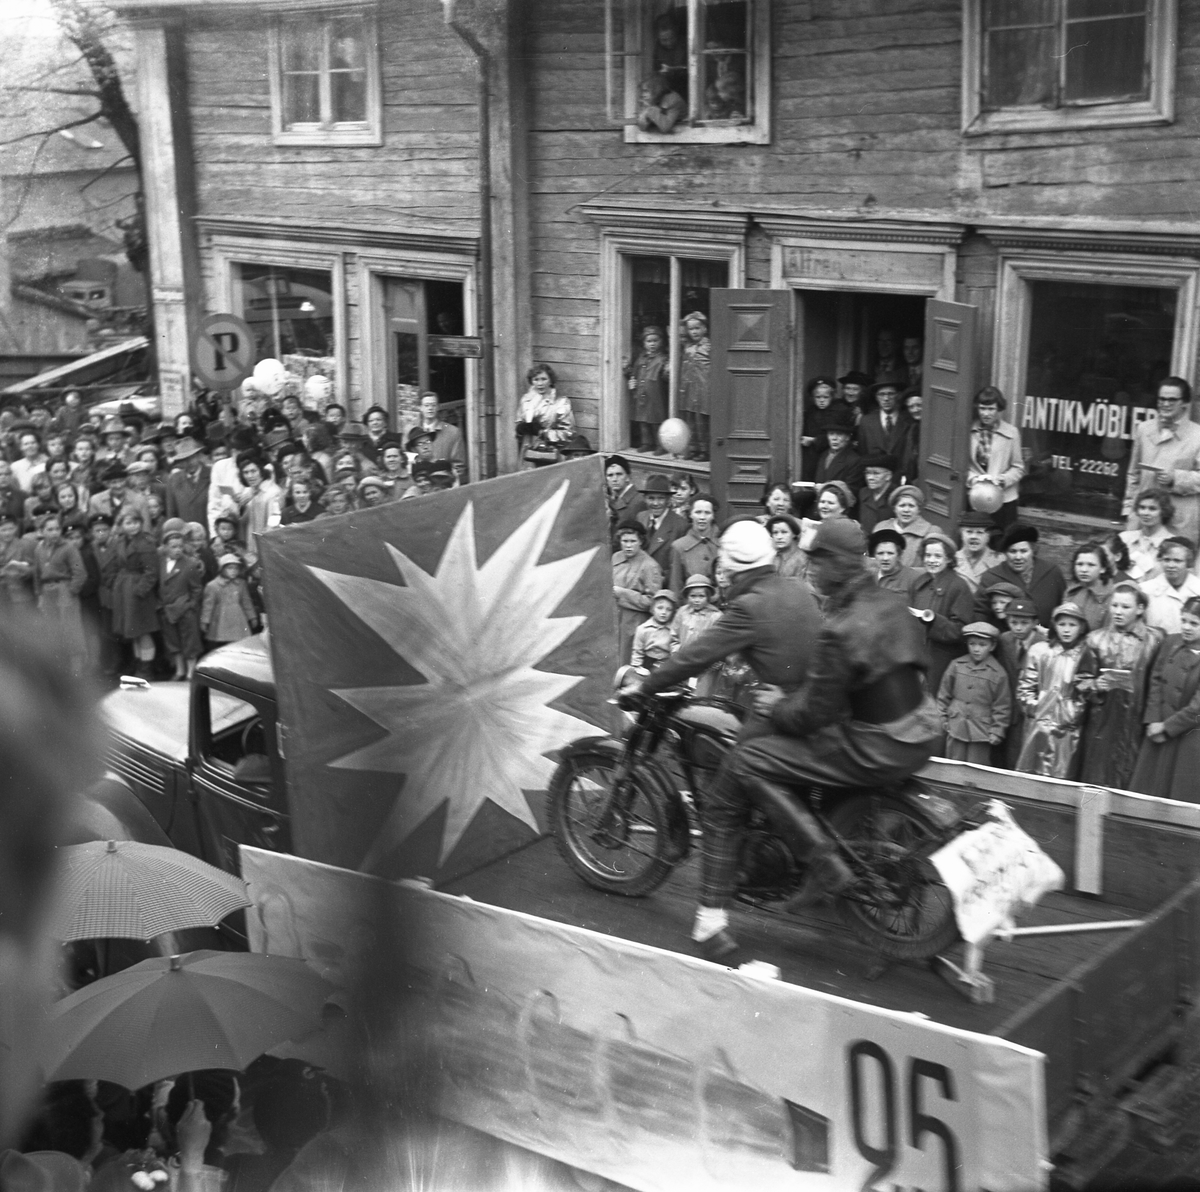 Orig. text: Majkarnevalen 1952.

Majgubbar på en motorcykel på ett lastbilsflak. Storgatan.